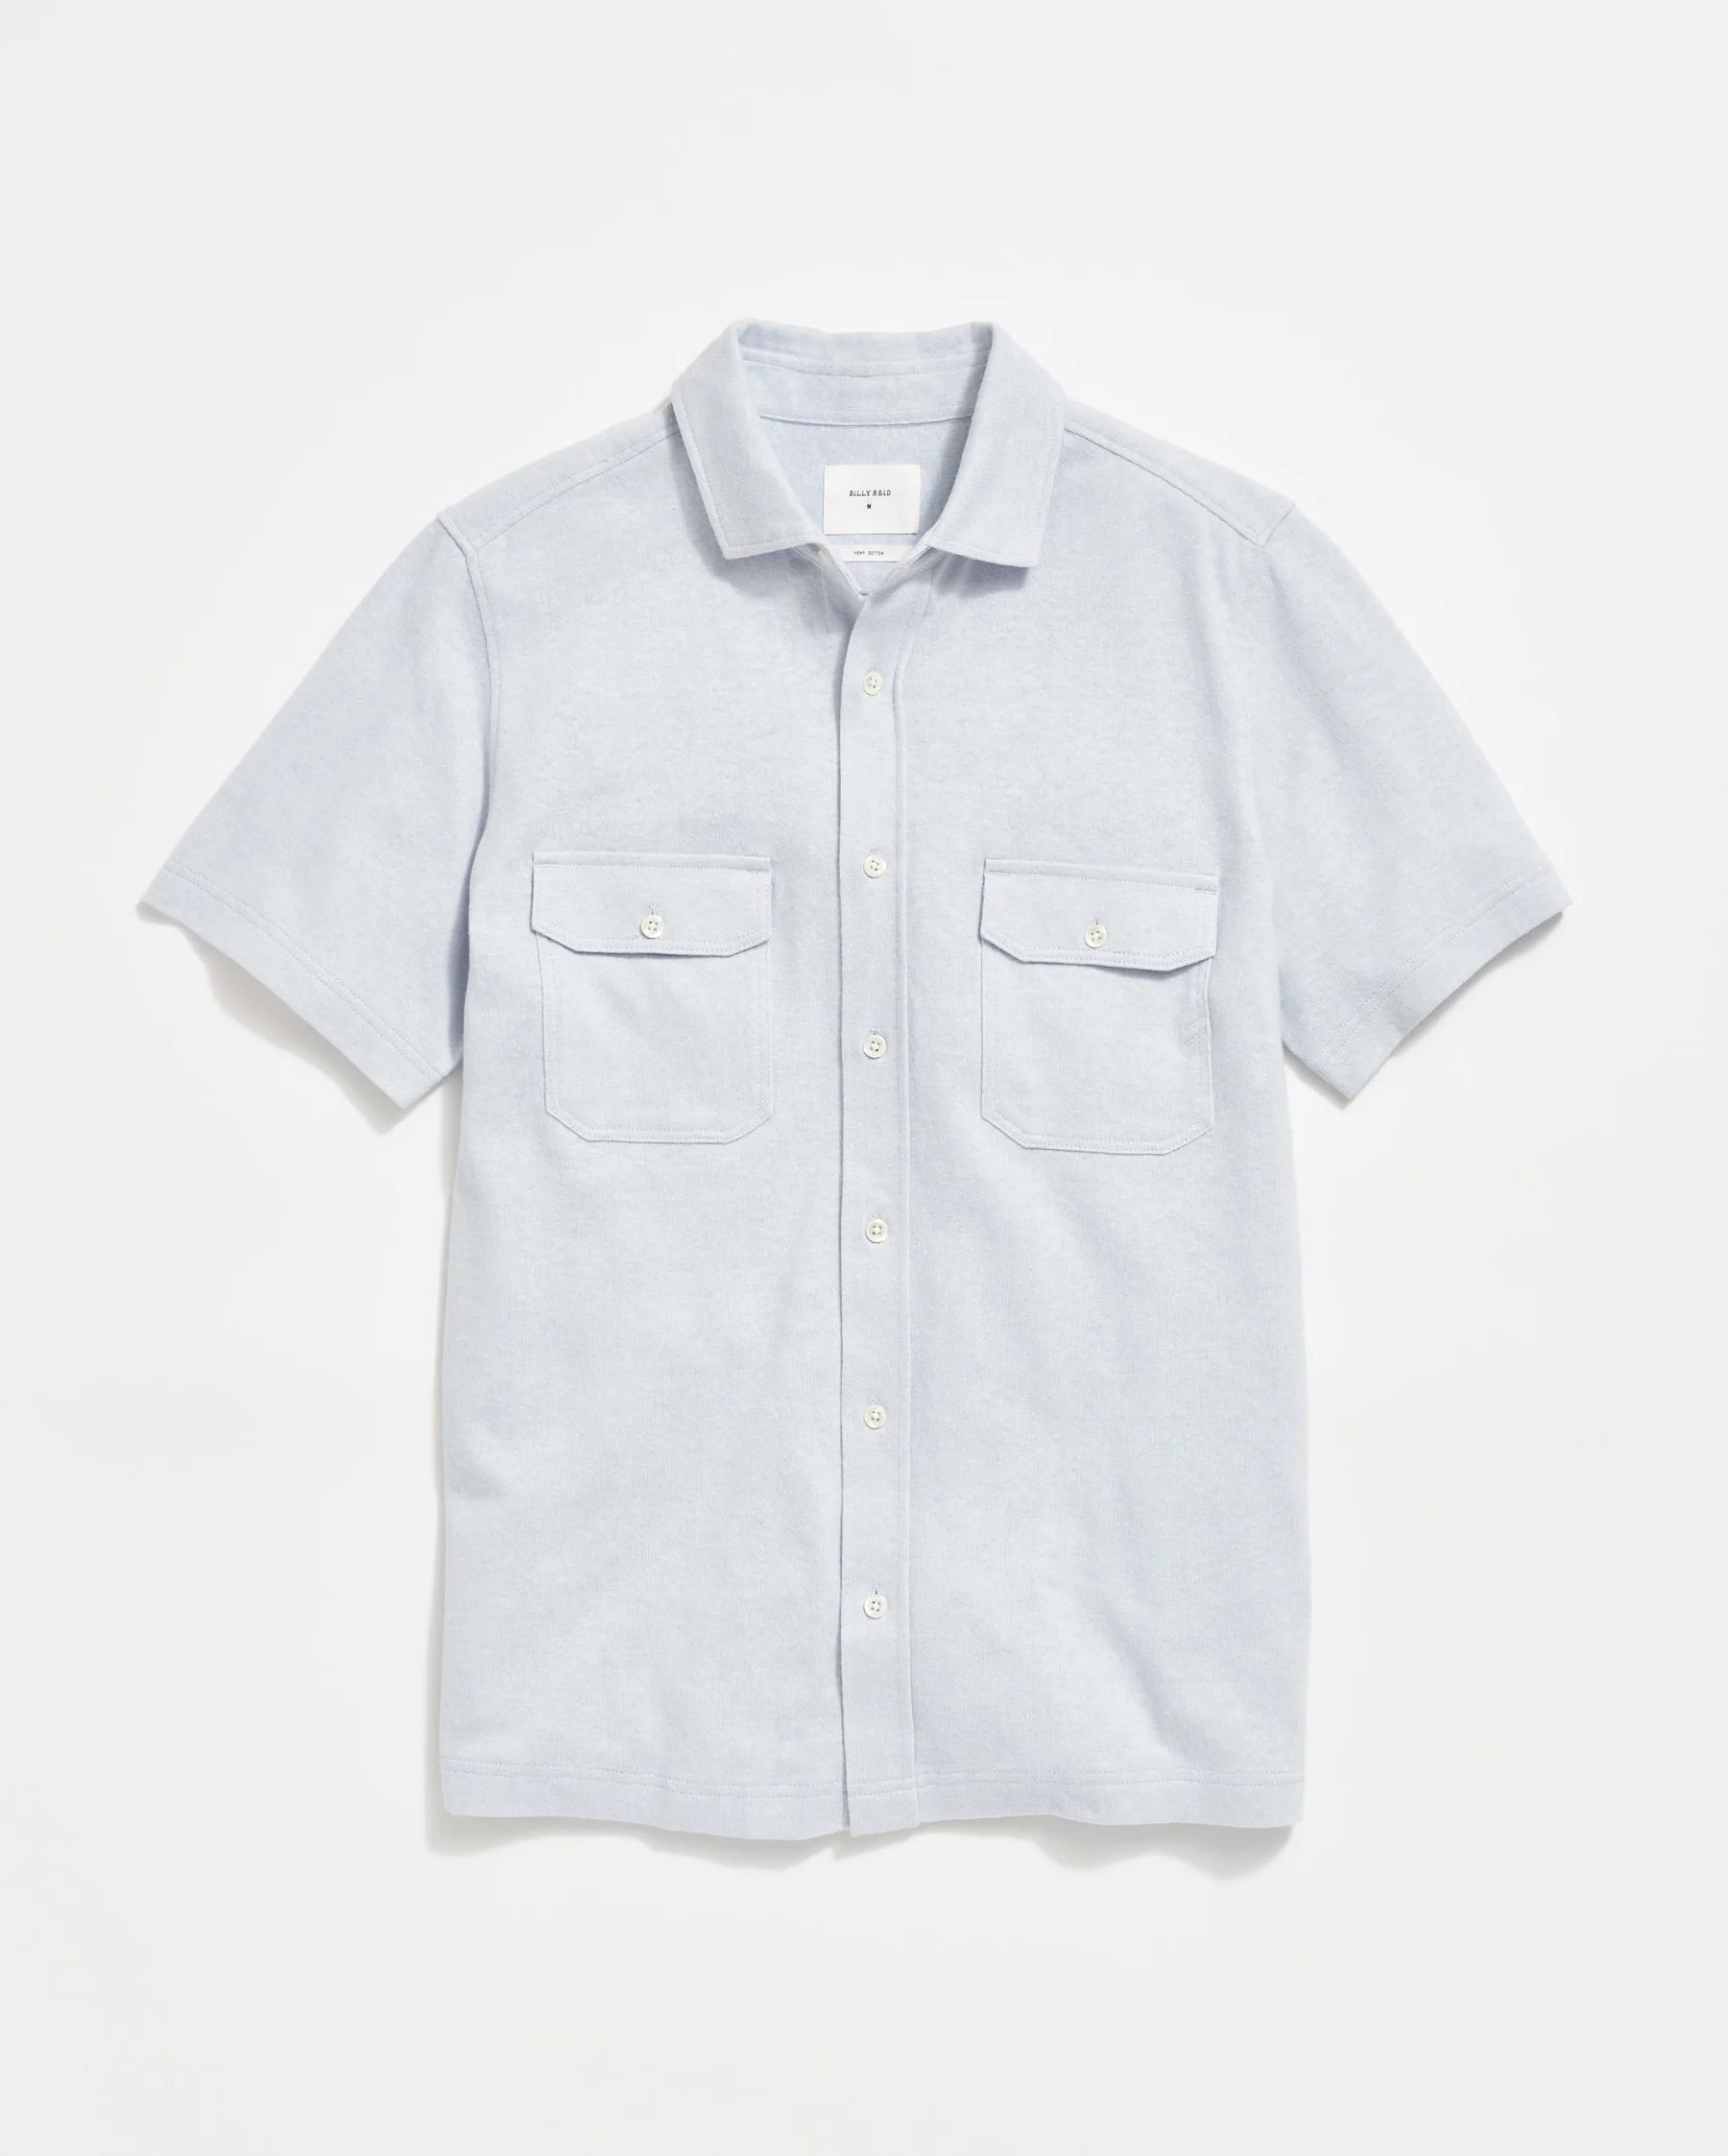 Short Sleeve Hemp Cotton Knit Shirt